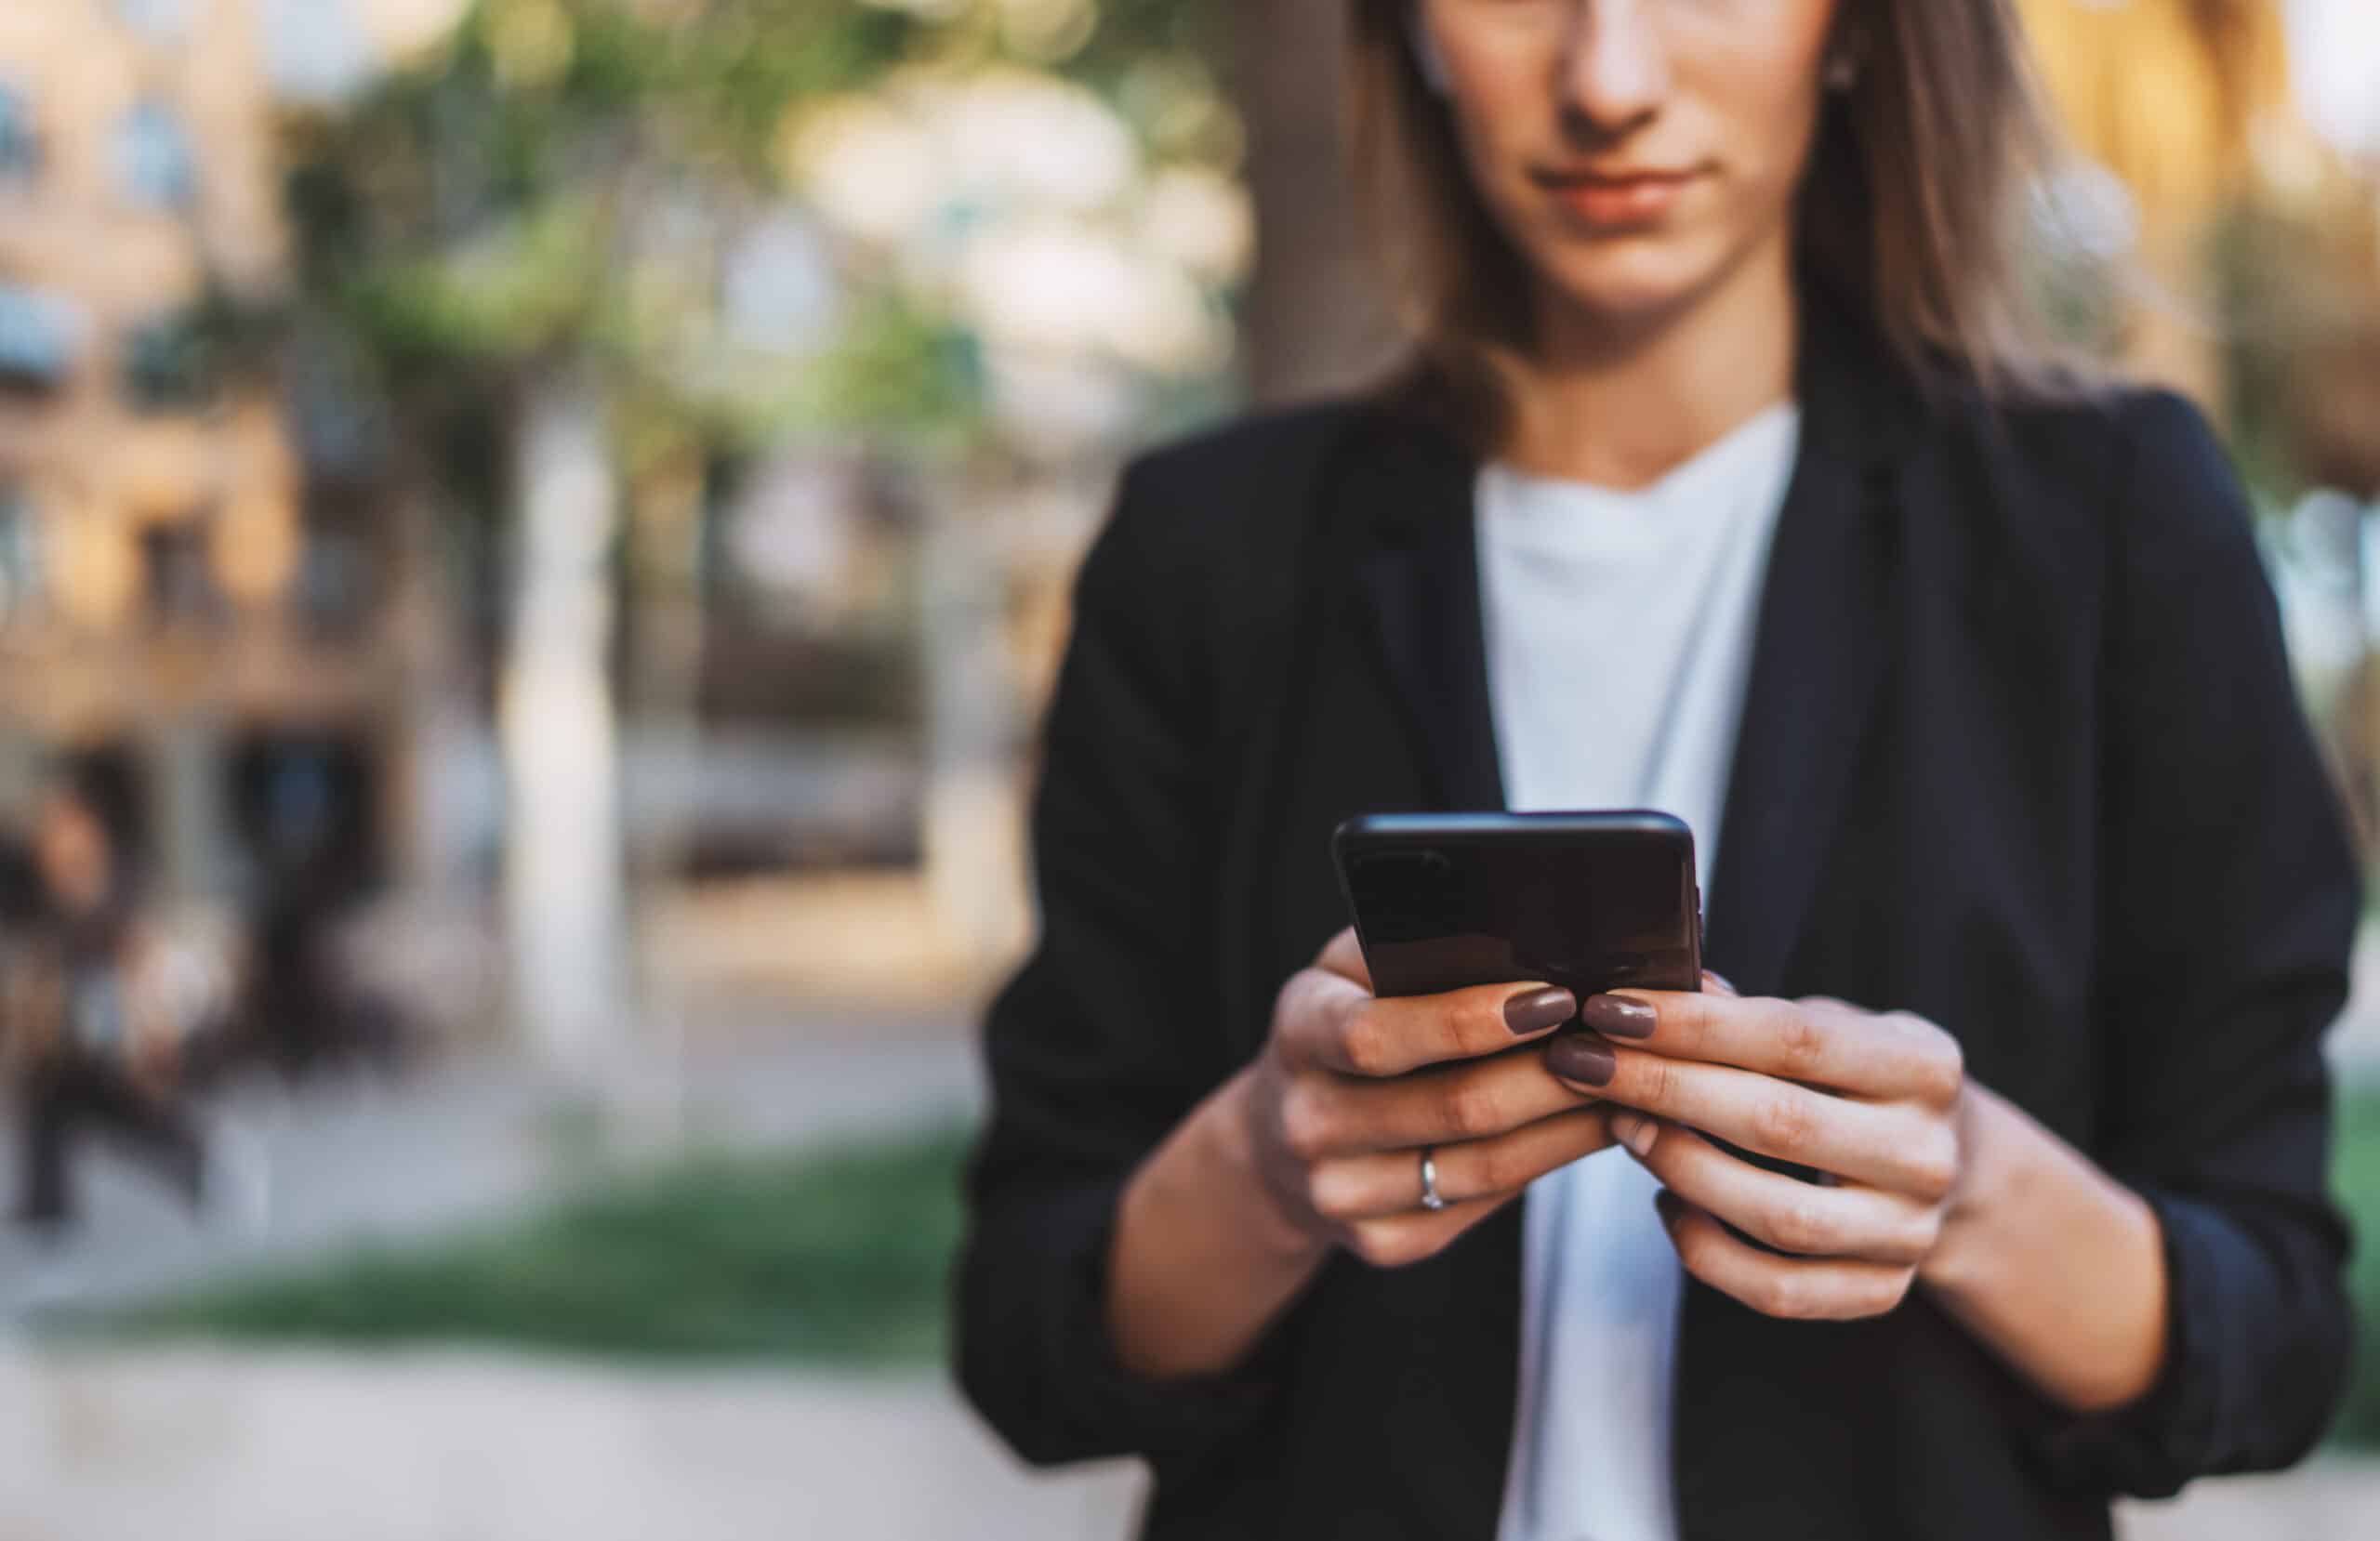 LiveCenter mobile: Geschäftsfrau schaut auf Smartphone in ihrer Hand